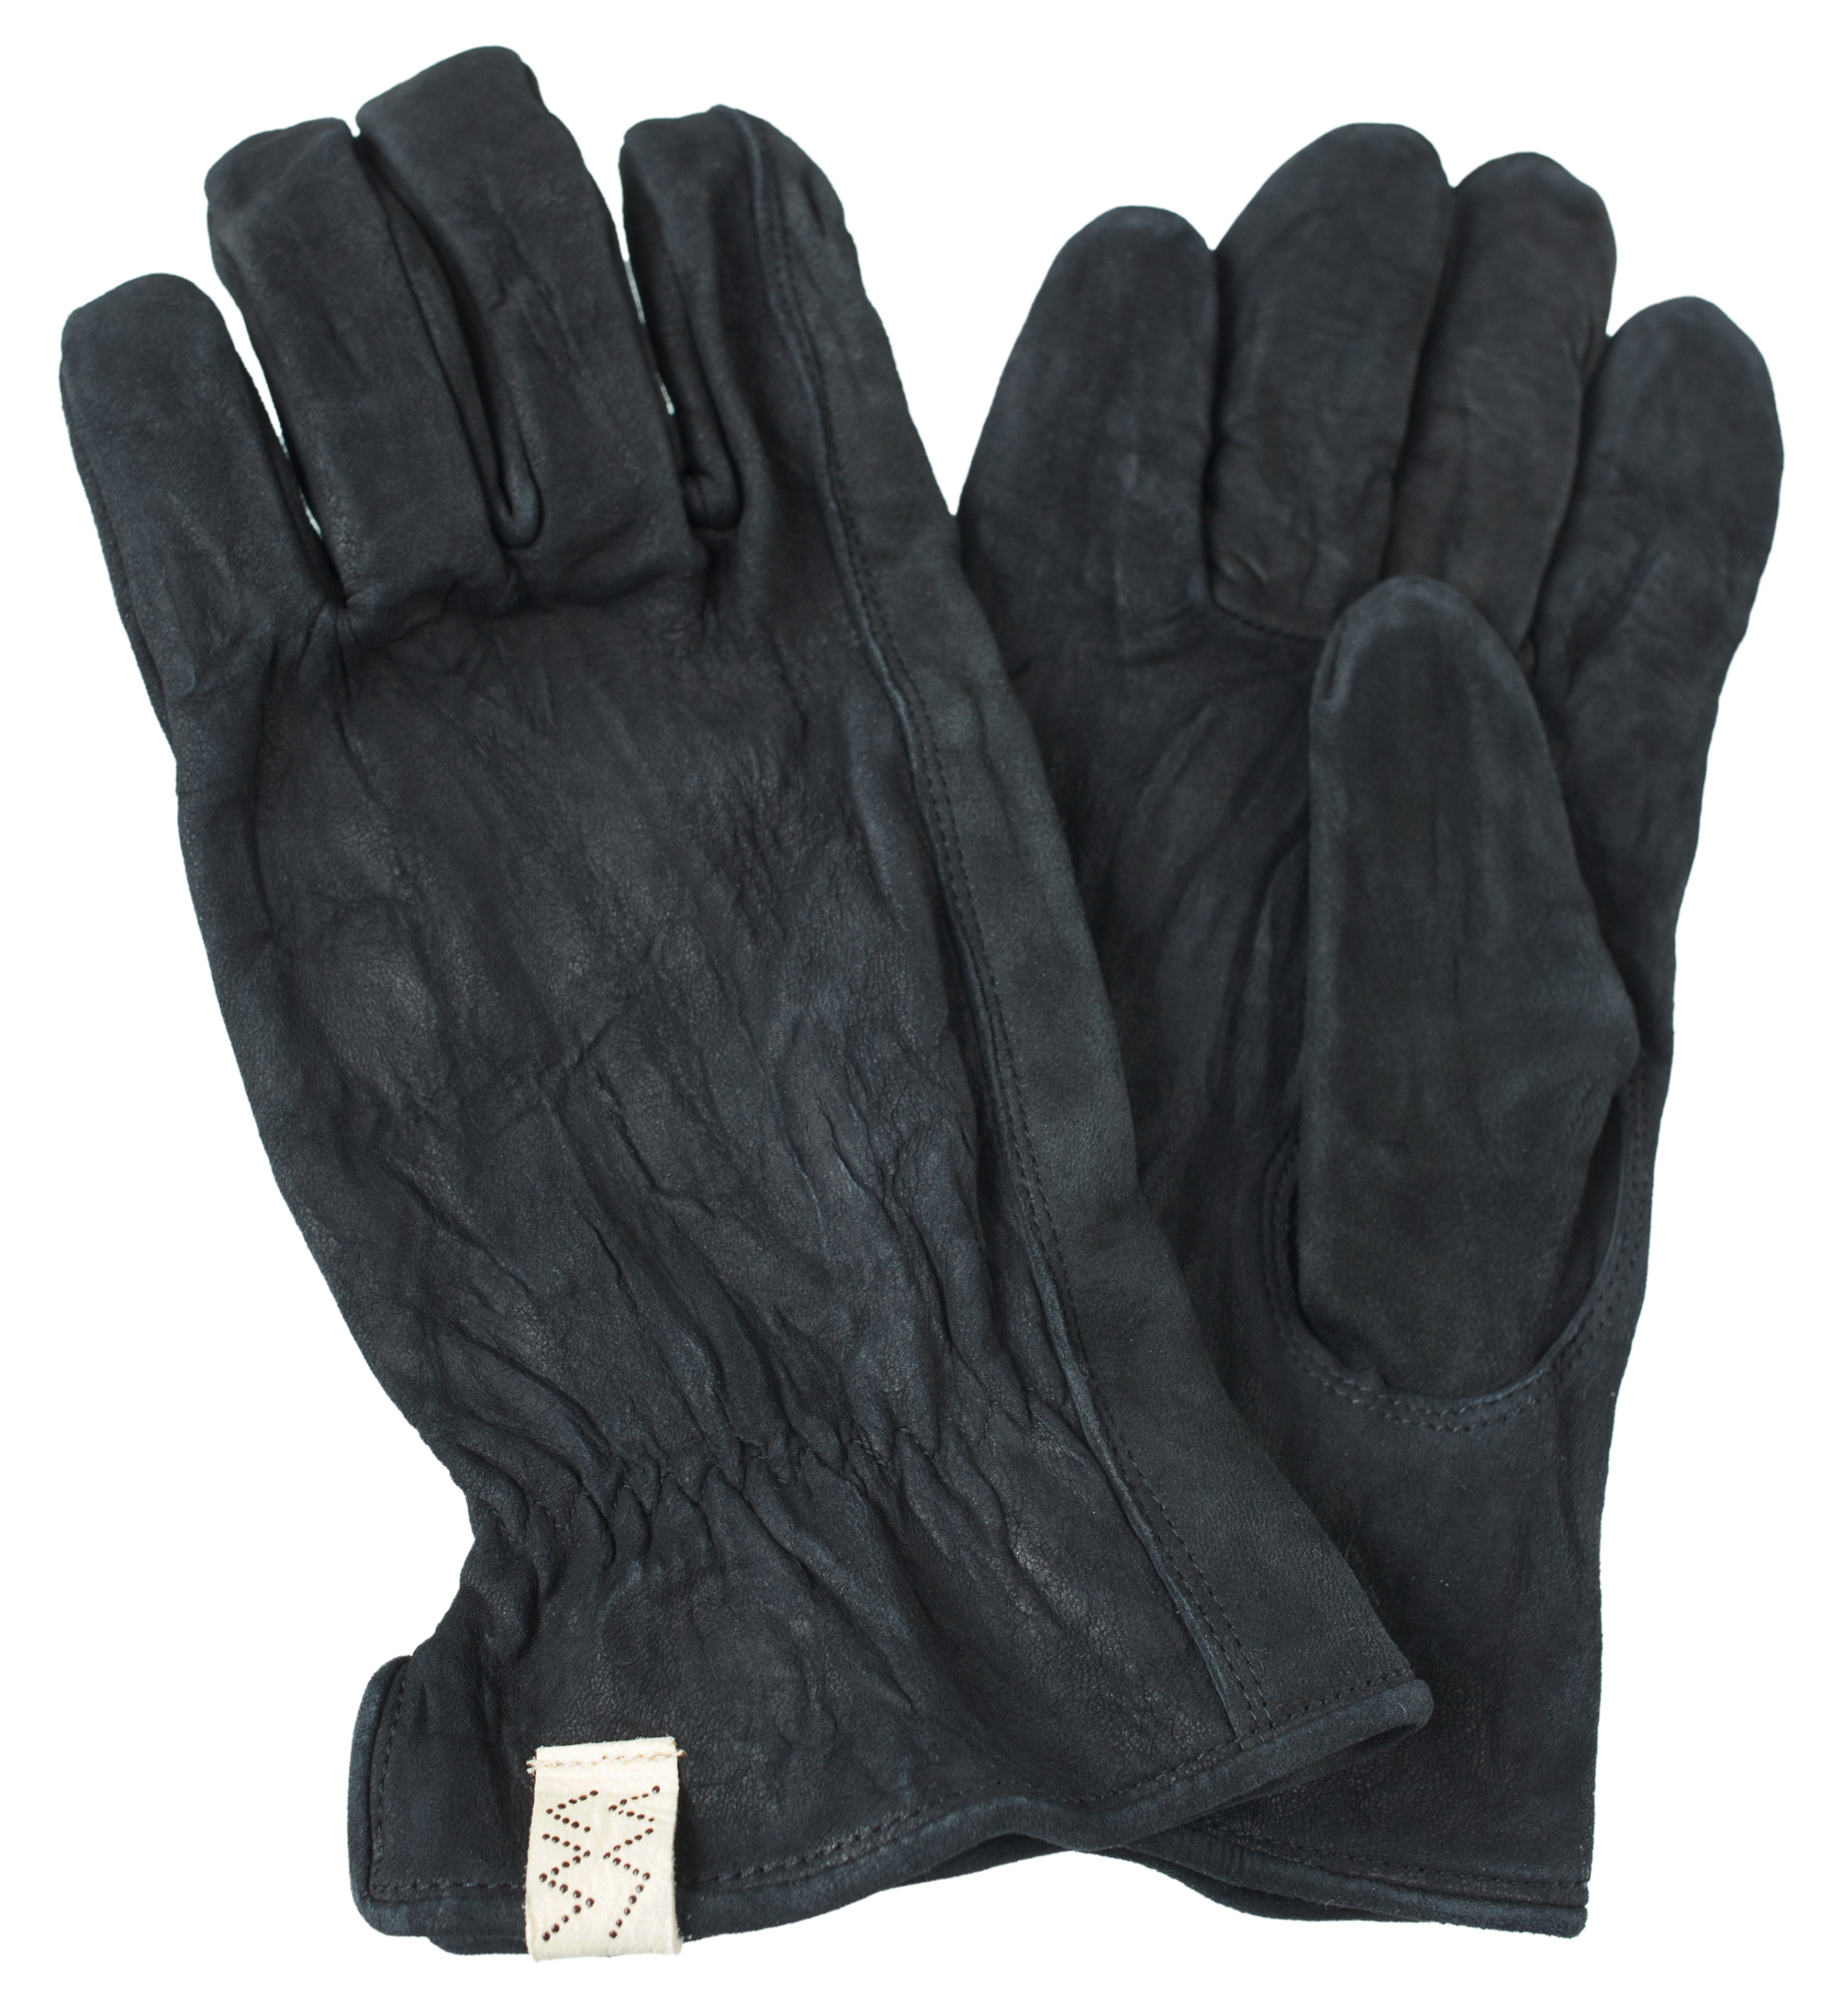 Коричневые замшевые перчатки visvim 0123203003008/BLACK, размер M/L 0123203003008/BLACK - фото 1